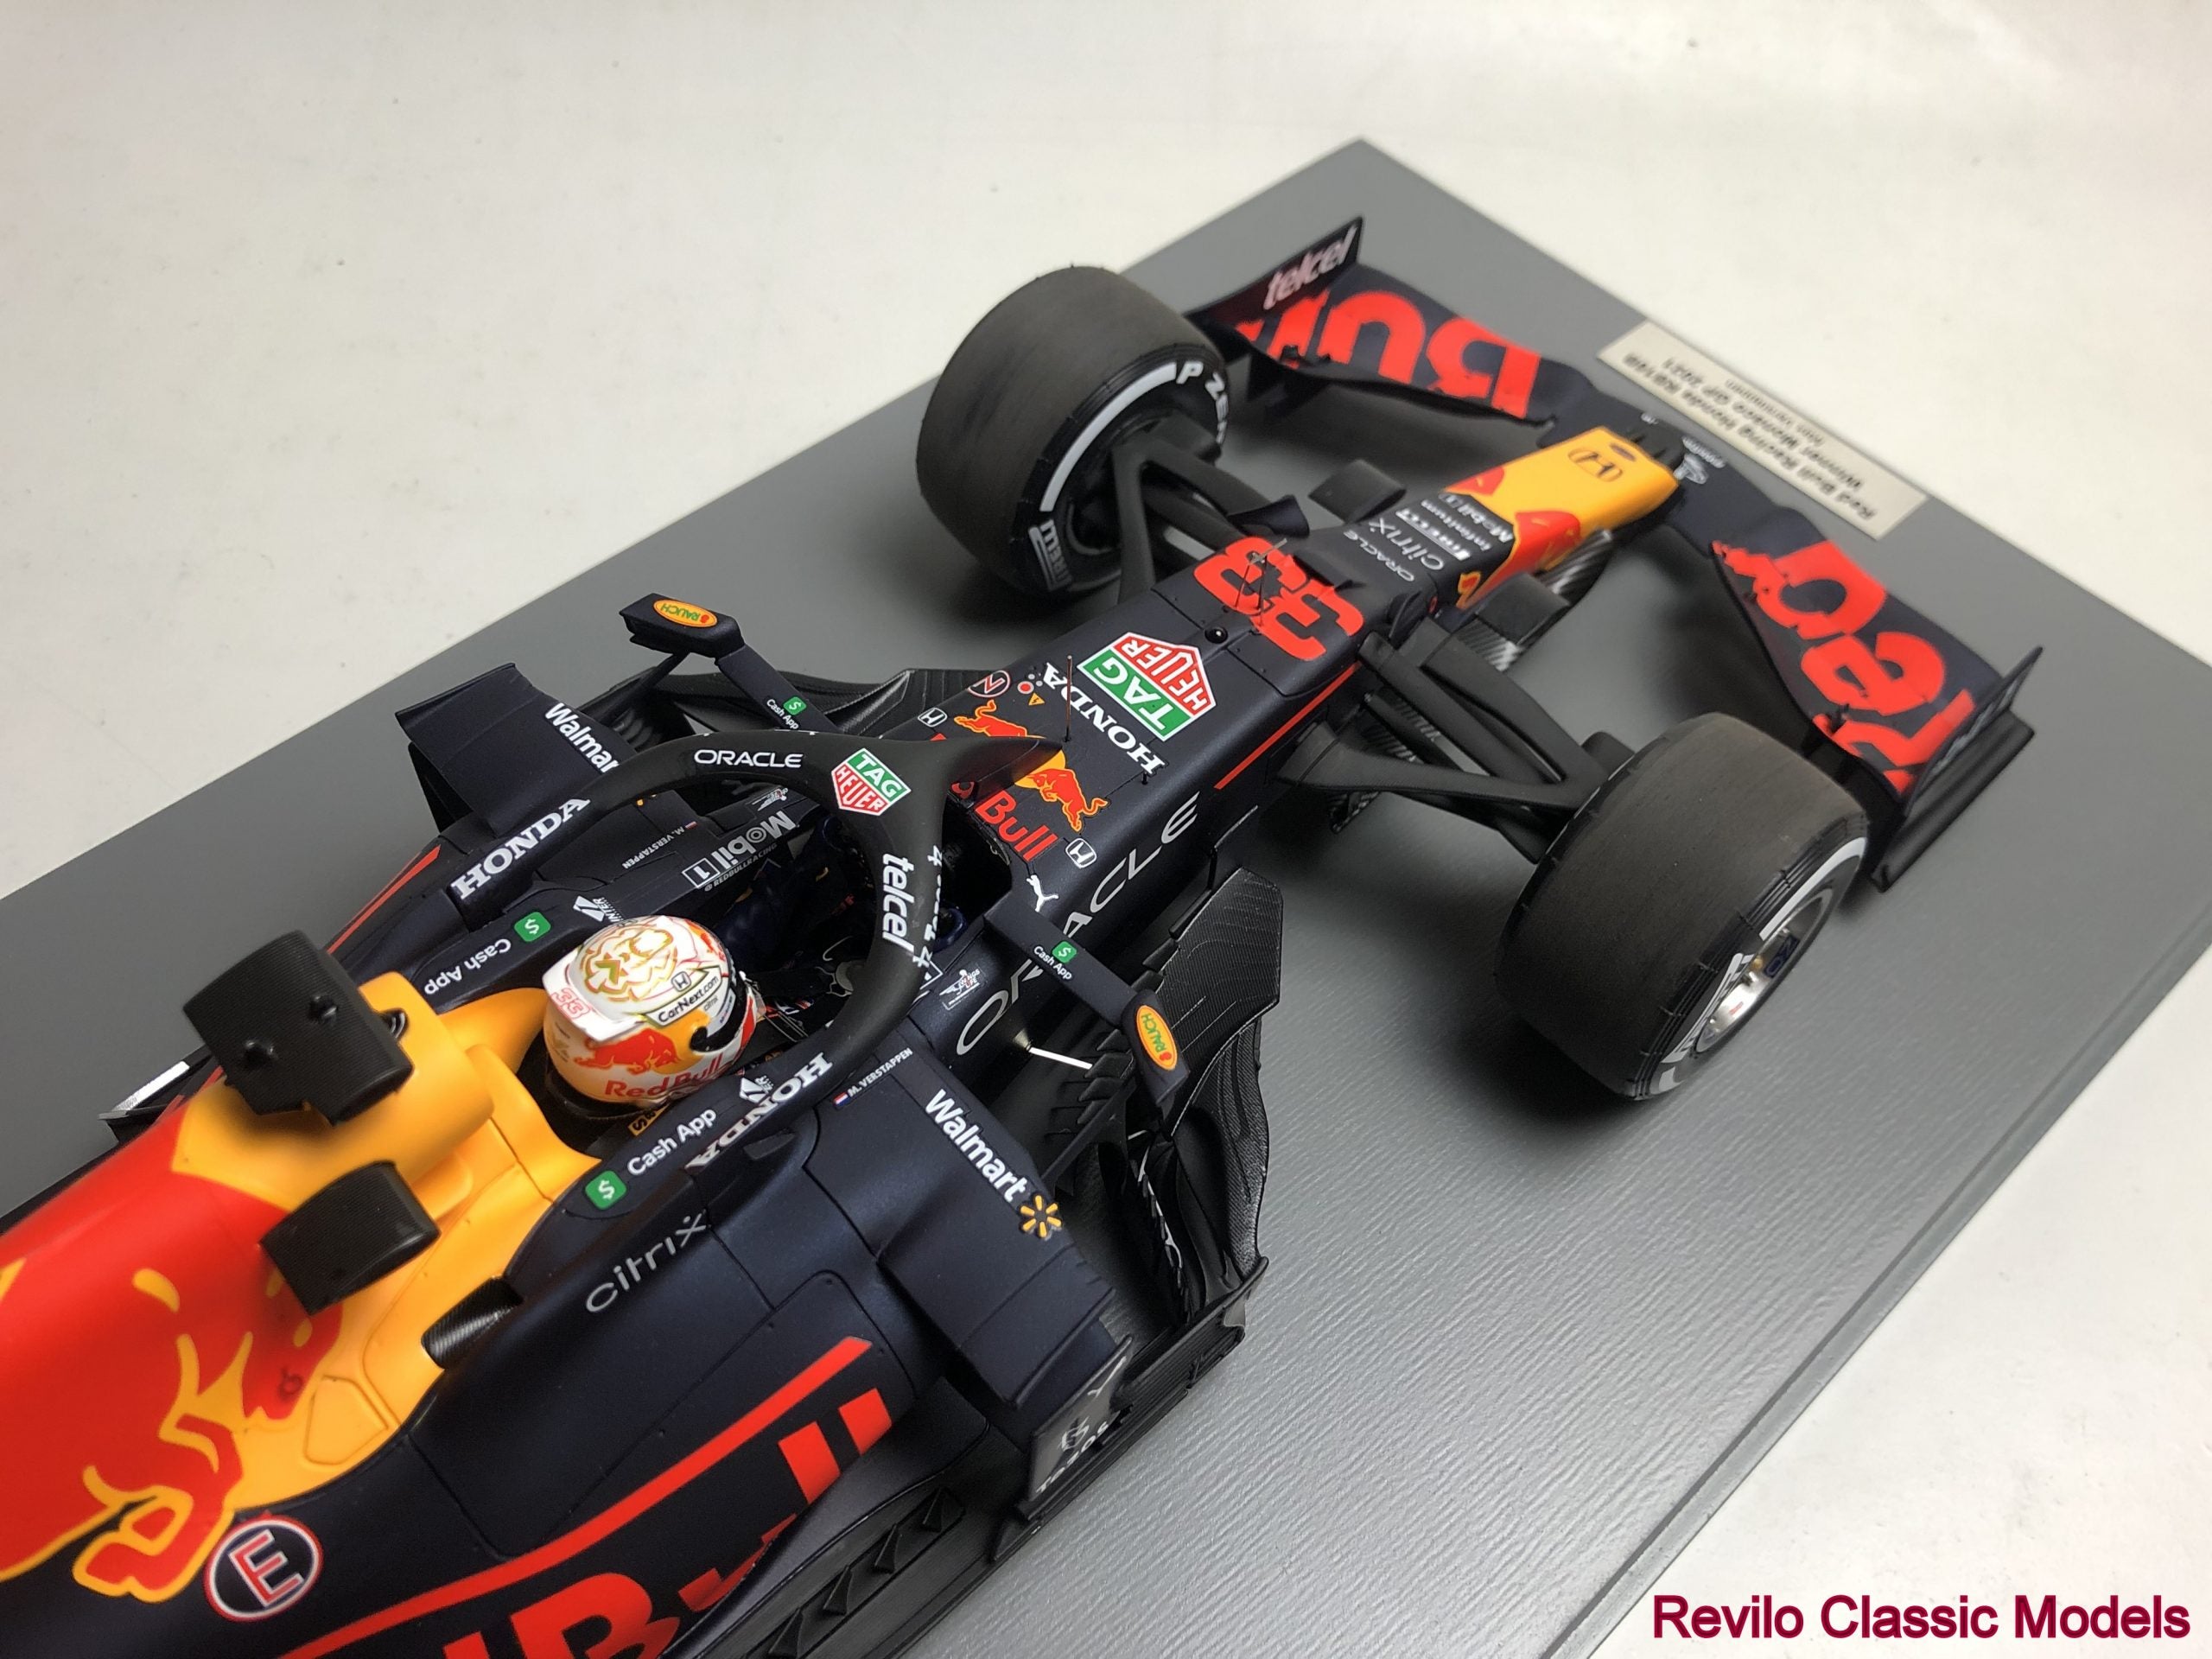 1:12 scale Red Bull RB16B Max Verstappen